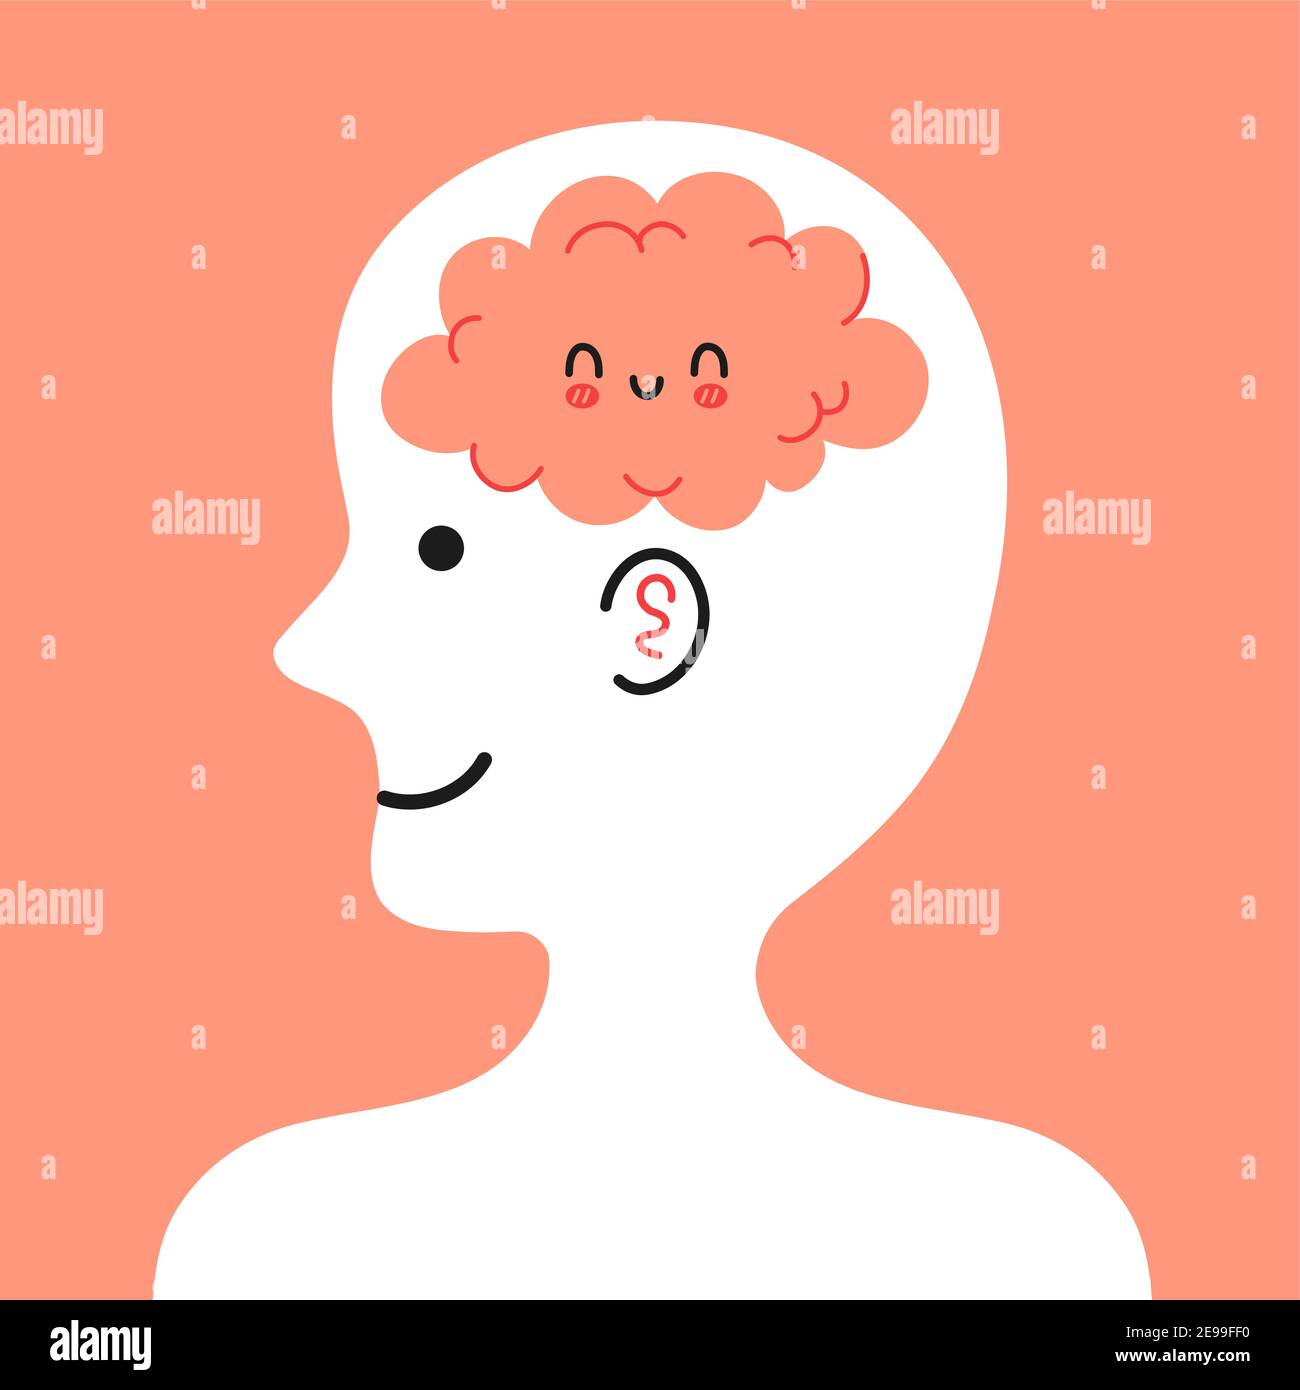 Cute testa umana in profilo con cervello felice all'interno. Buon umore, mentale, concetto di condizione emotiva. Icona di illustrazione del carattere cartoon vettoriale Illustrazione Vettoriale